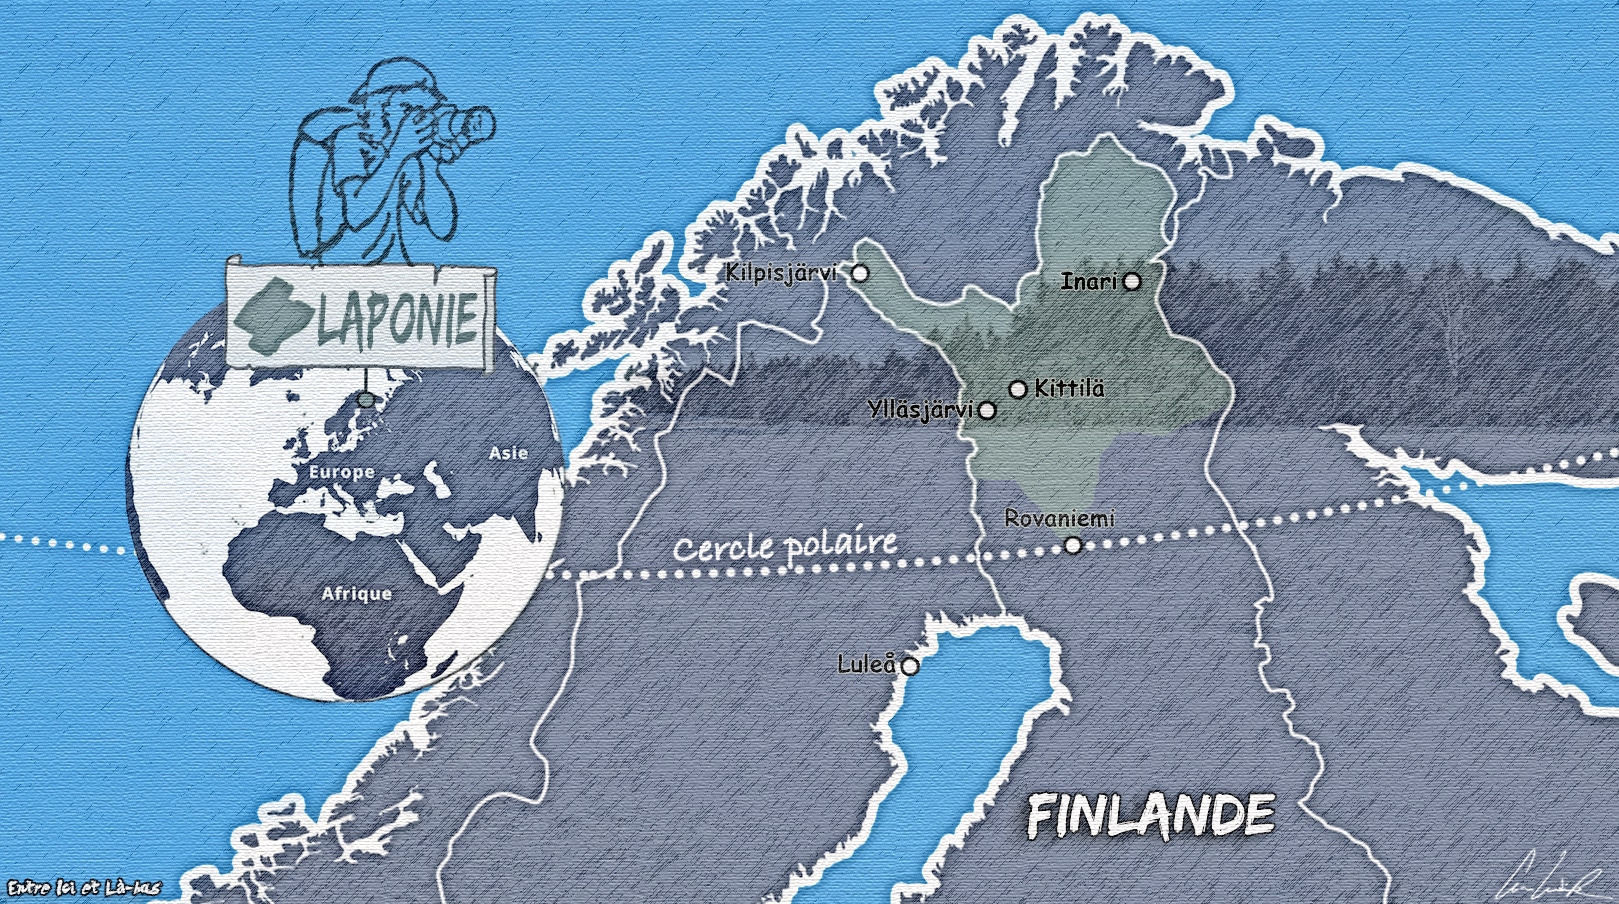 Voici une carte de la Laponie Finlandaise qui s'étend sur environ 100 000 km2 (soit un quart du pays) depuis le nord de la Province d'Oulu. La Laponie finlandaise possède une frontière avec la Russie à l’est, la Suède à l’ouest et la Norvège au nord.